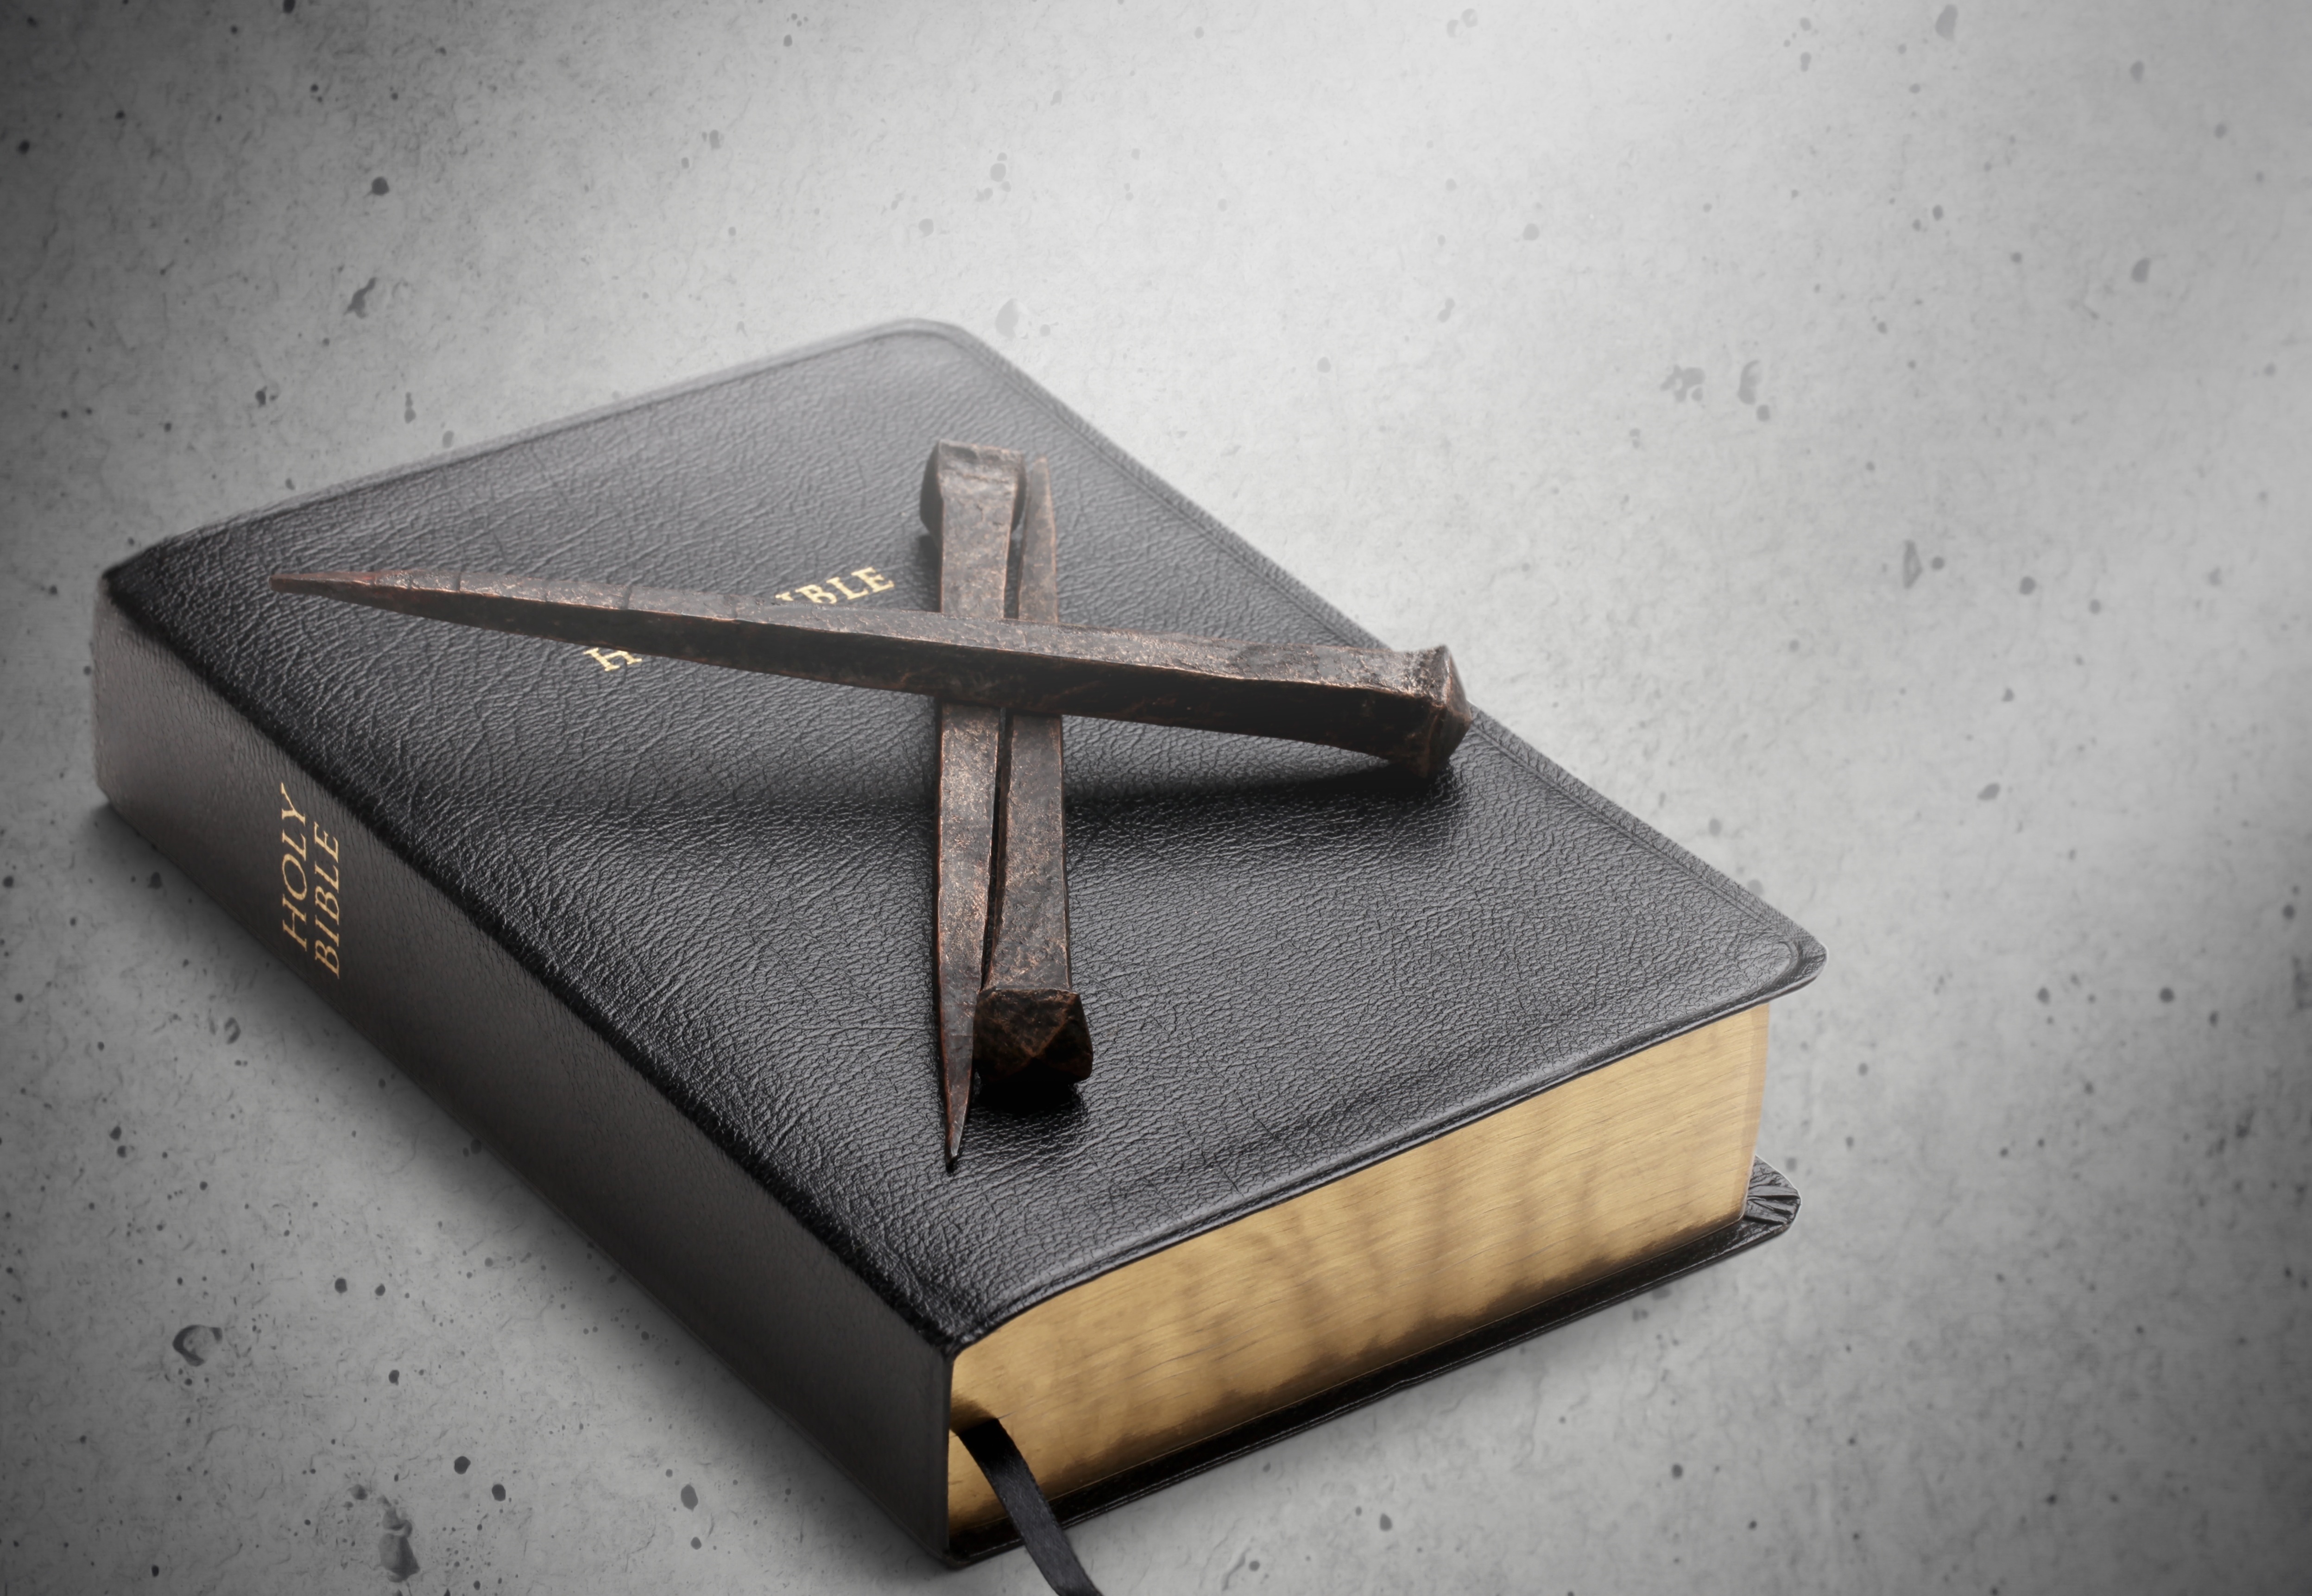 Evangelismo, Um Princípio, Não um Expediente